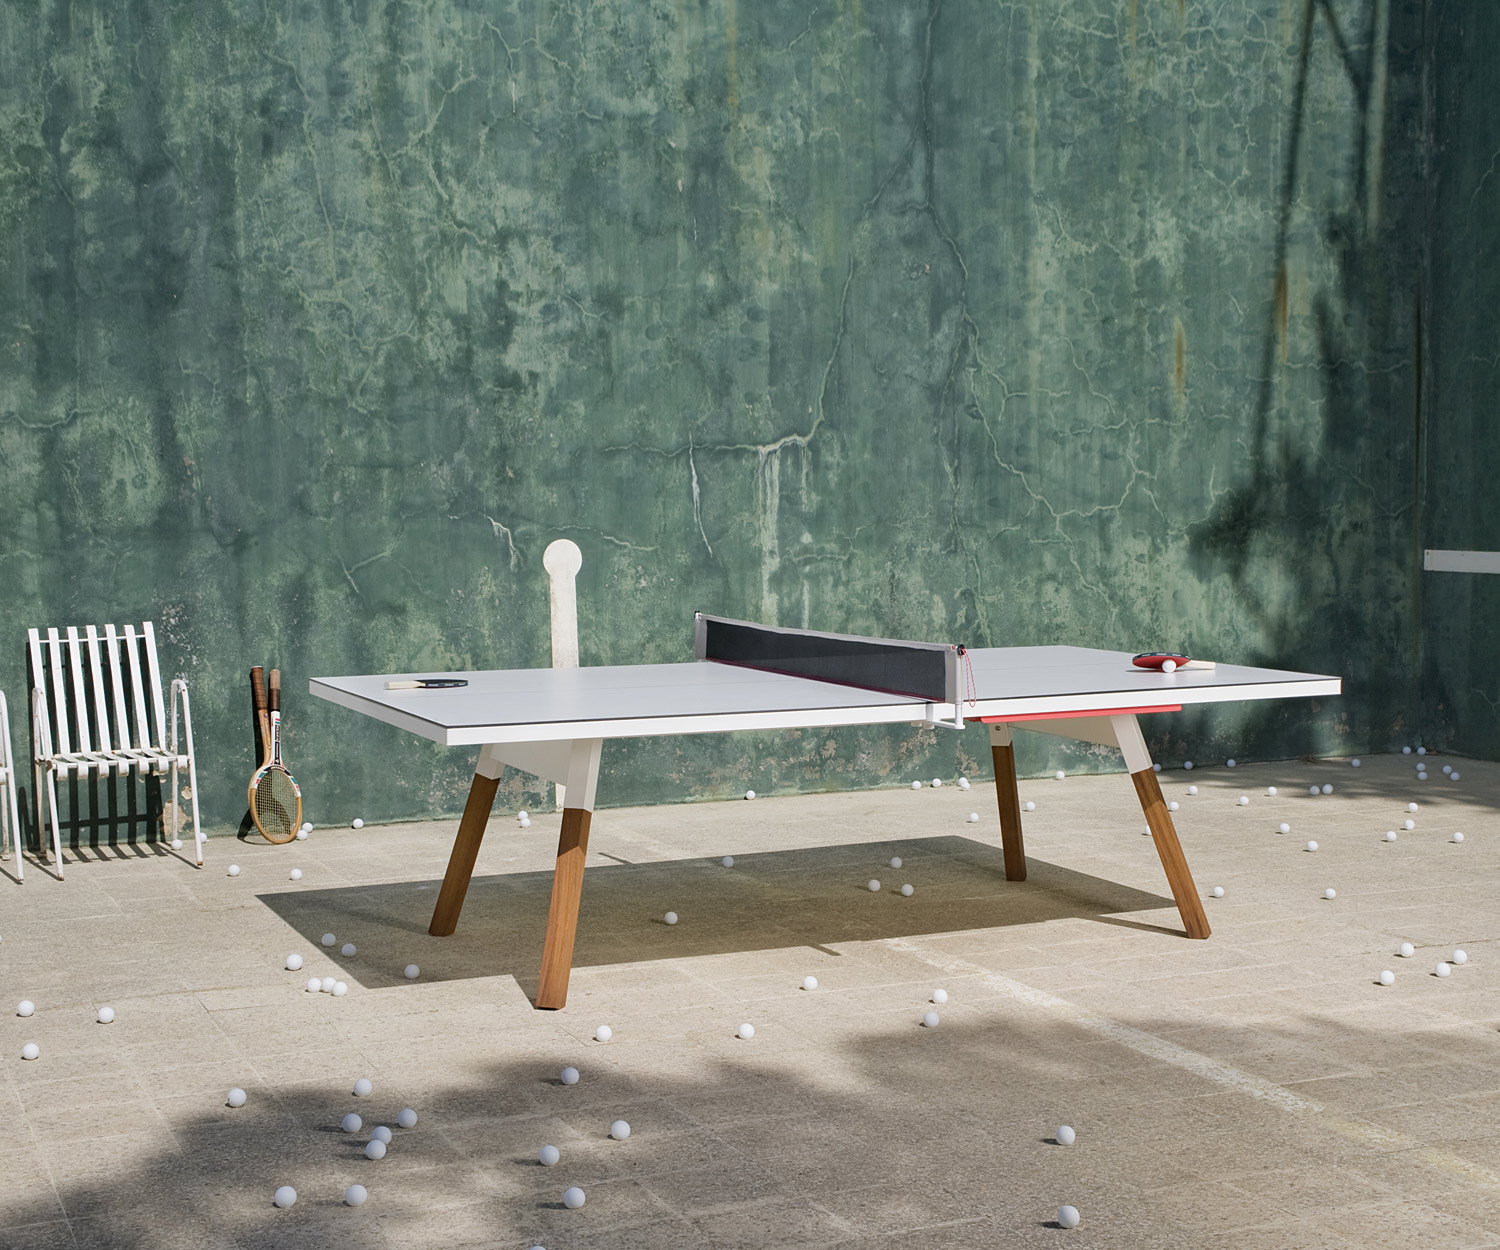 Tavolo da ping pong per mangiare all'aperto dopo una selvaggia partita con numerose palline di celluloide